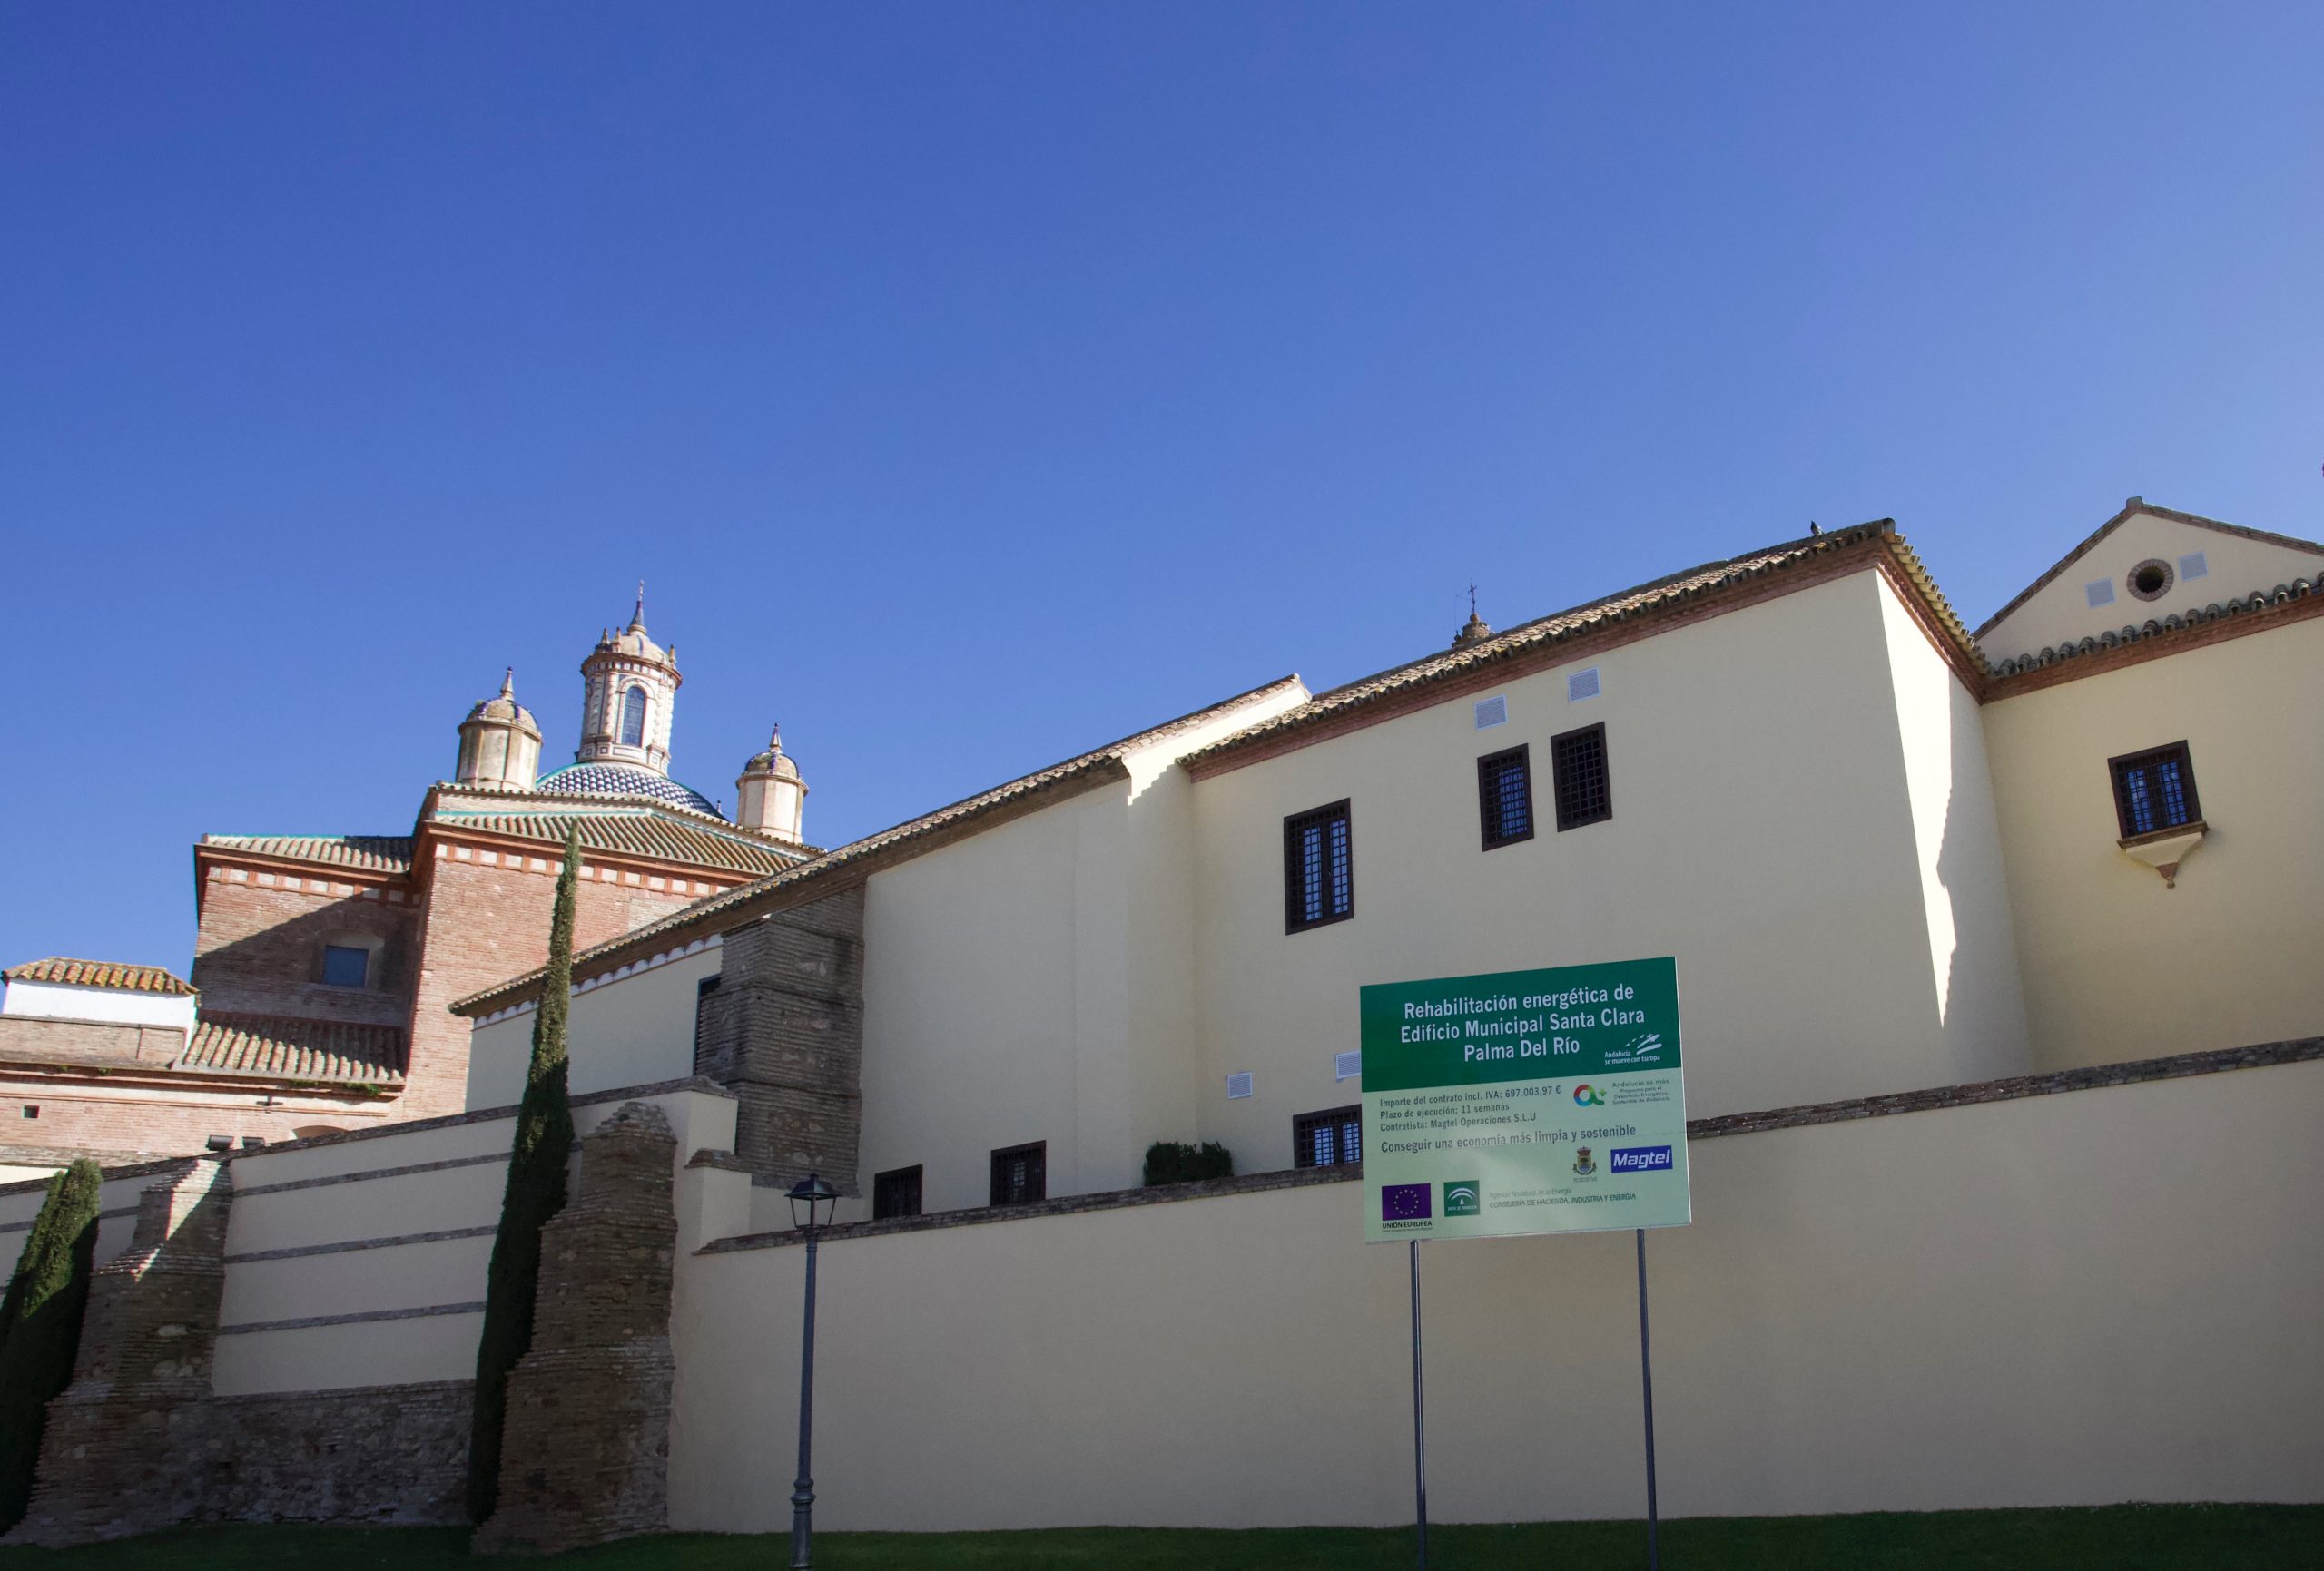 Magtel posibilita la eficiencia energética del antiguo Convento de Santa Clara en Palma del Río (Córdoba)